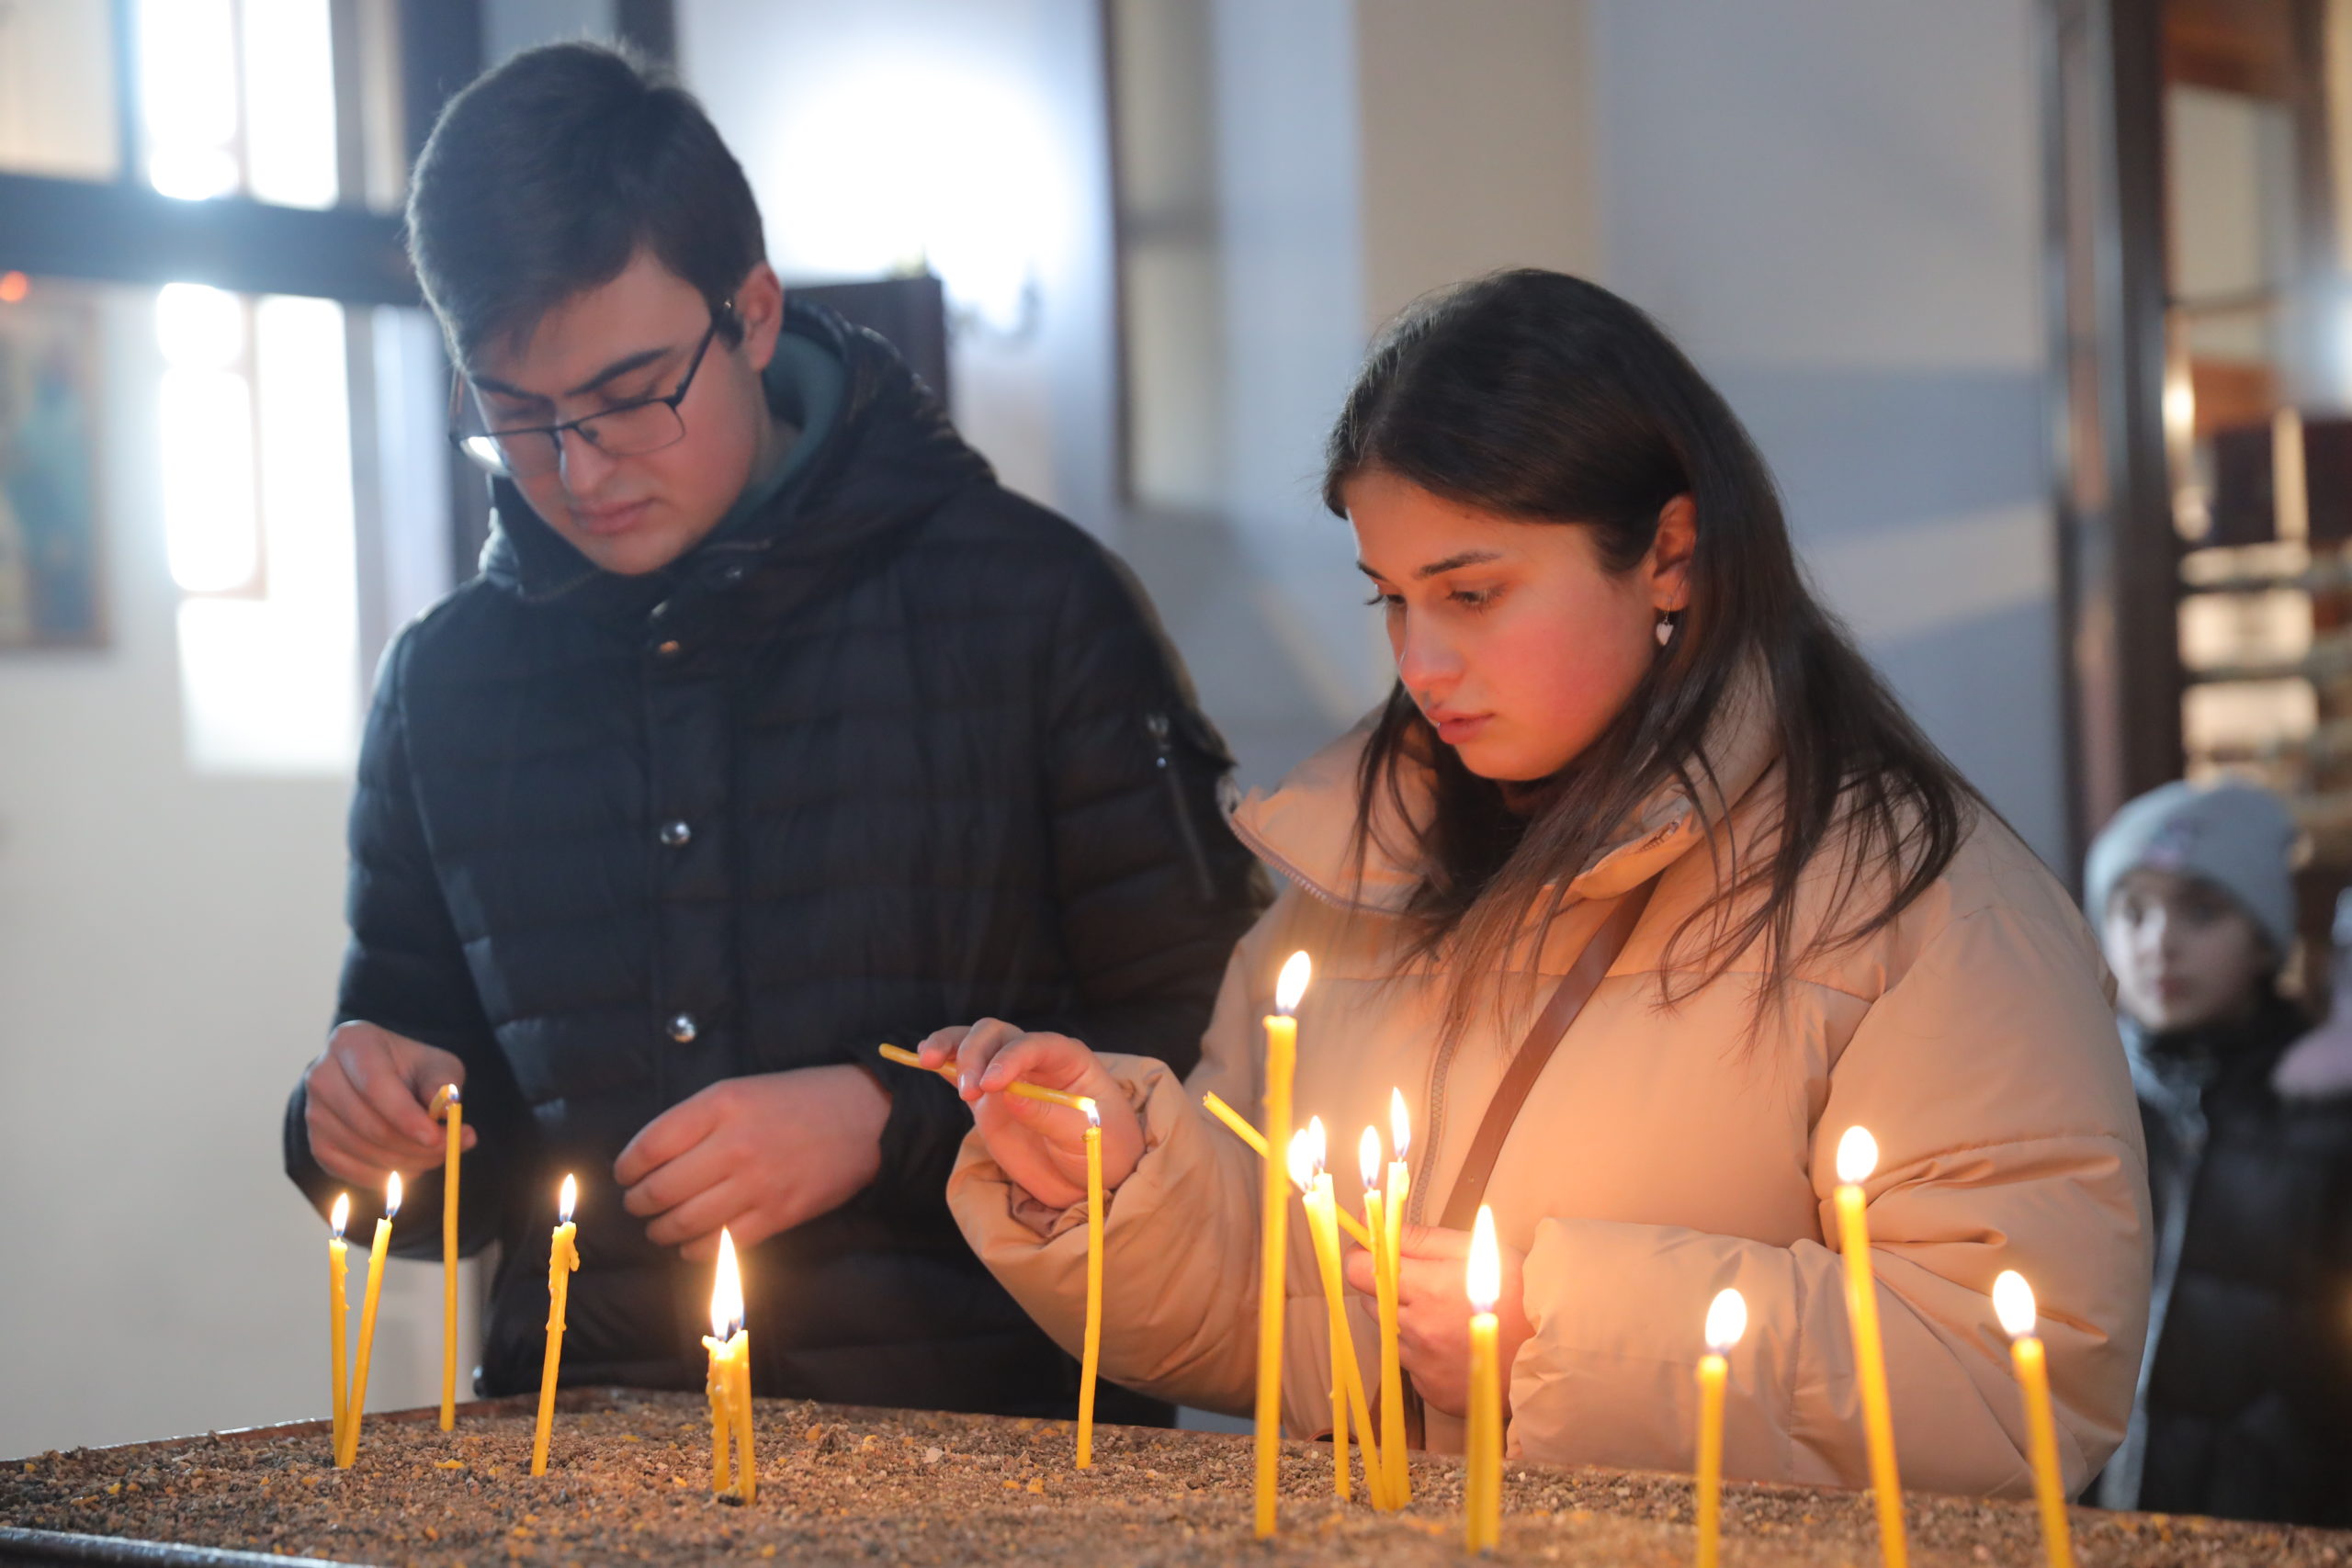 НИИРК – Участники Форума лидеров развития почтили память погибших во время Спитакского землетрясения